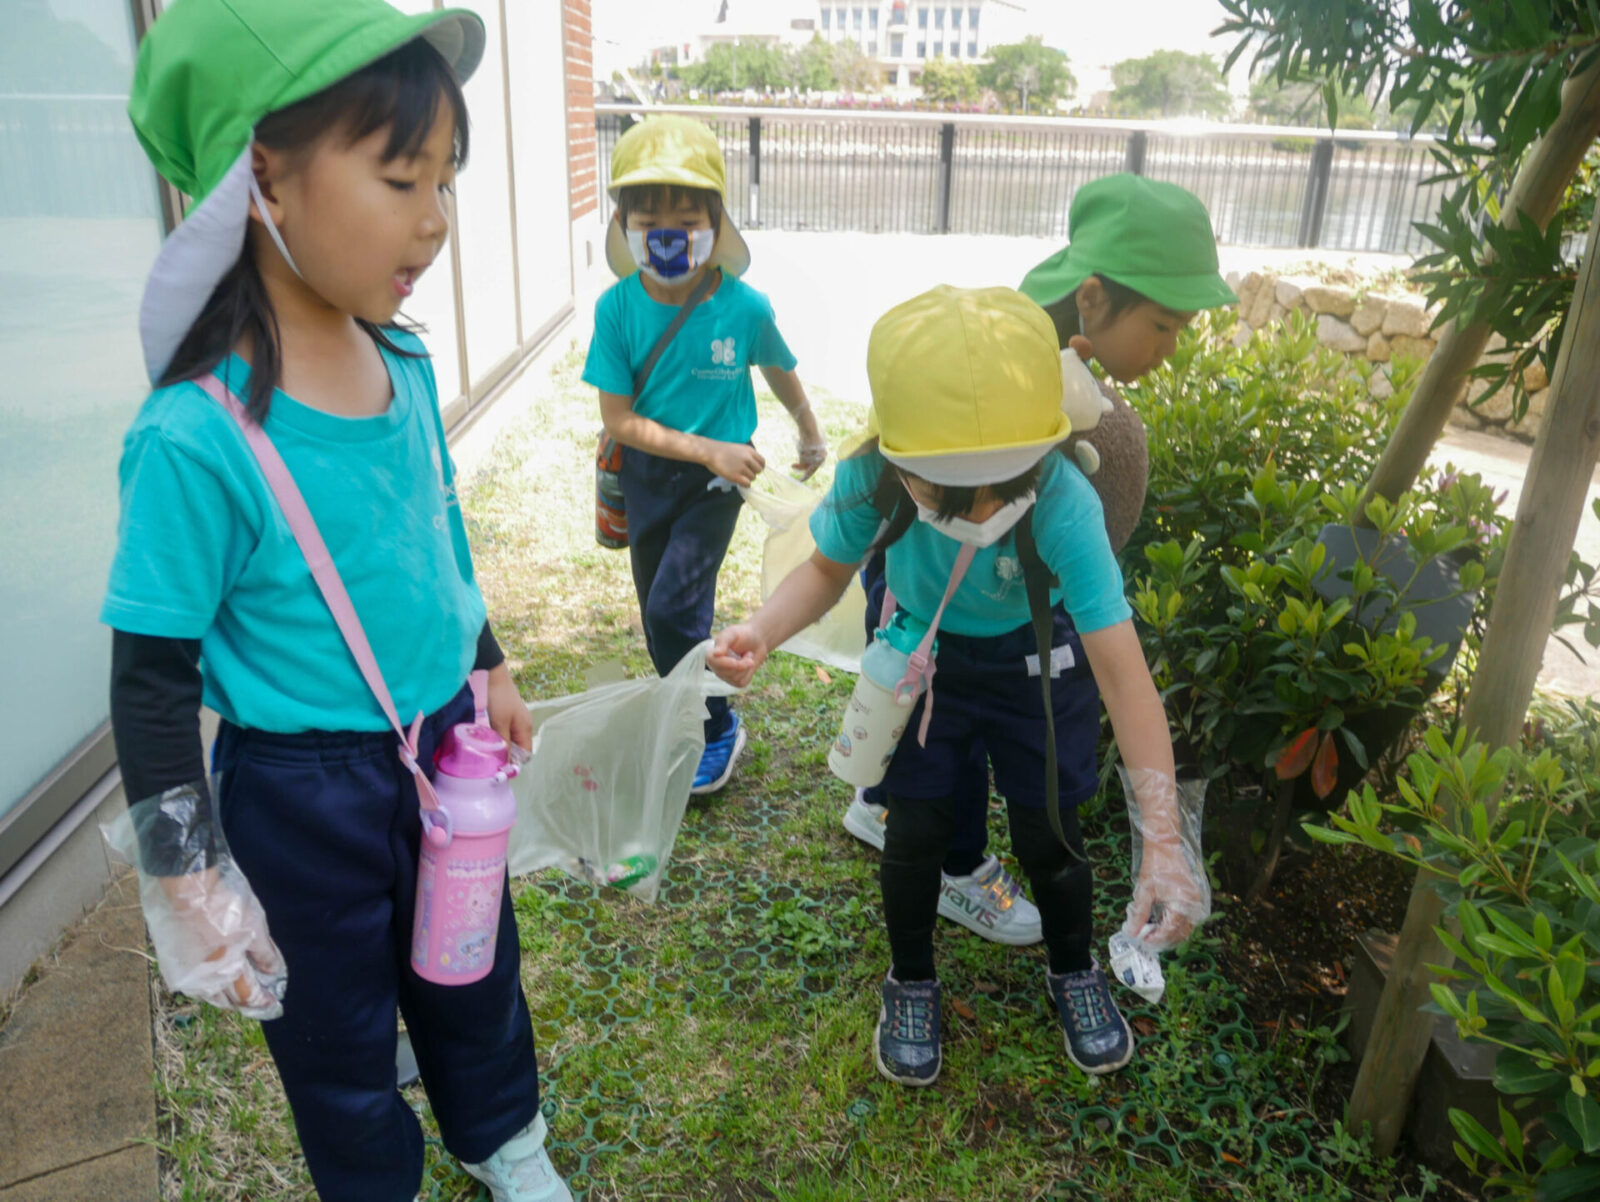 外でゴミ拾いをするインターナショナルスクールの生徒たち。Earth Day